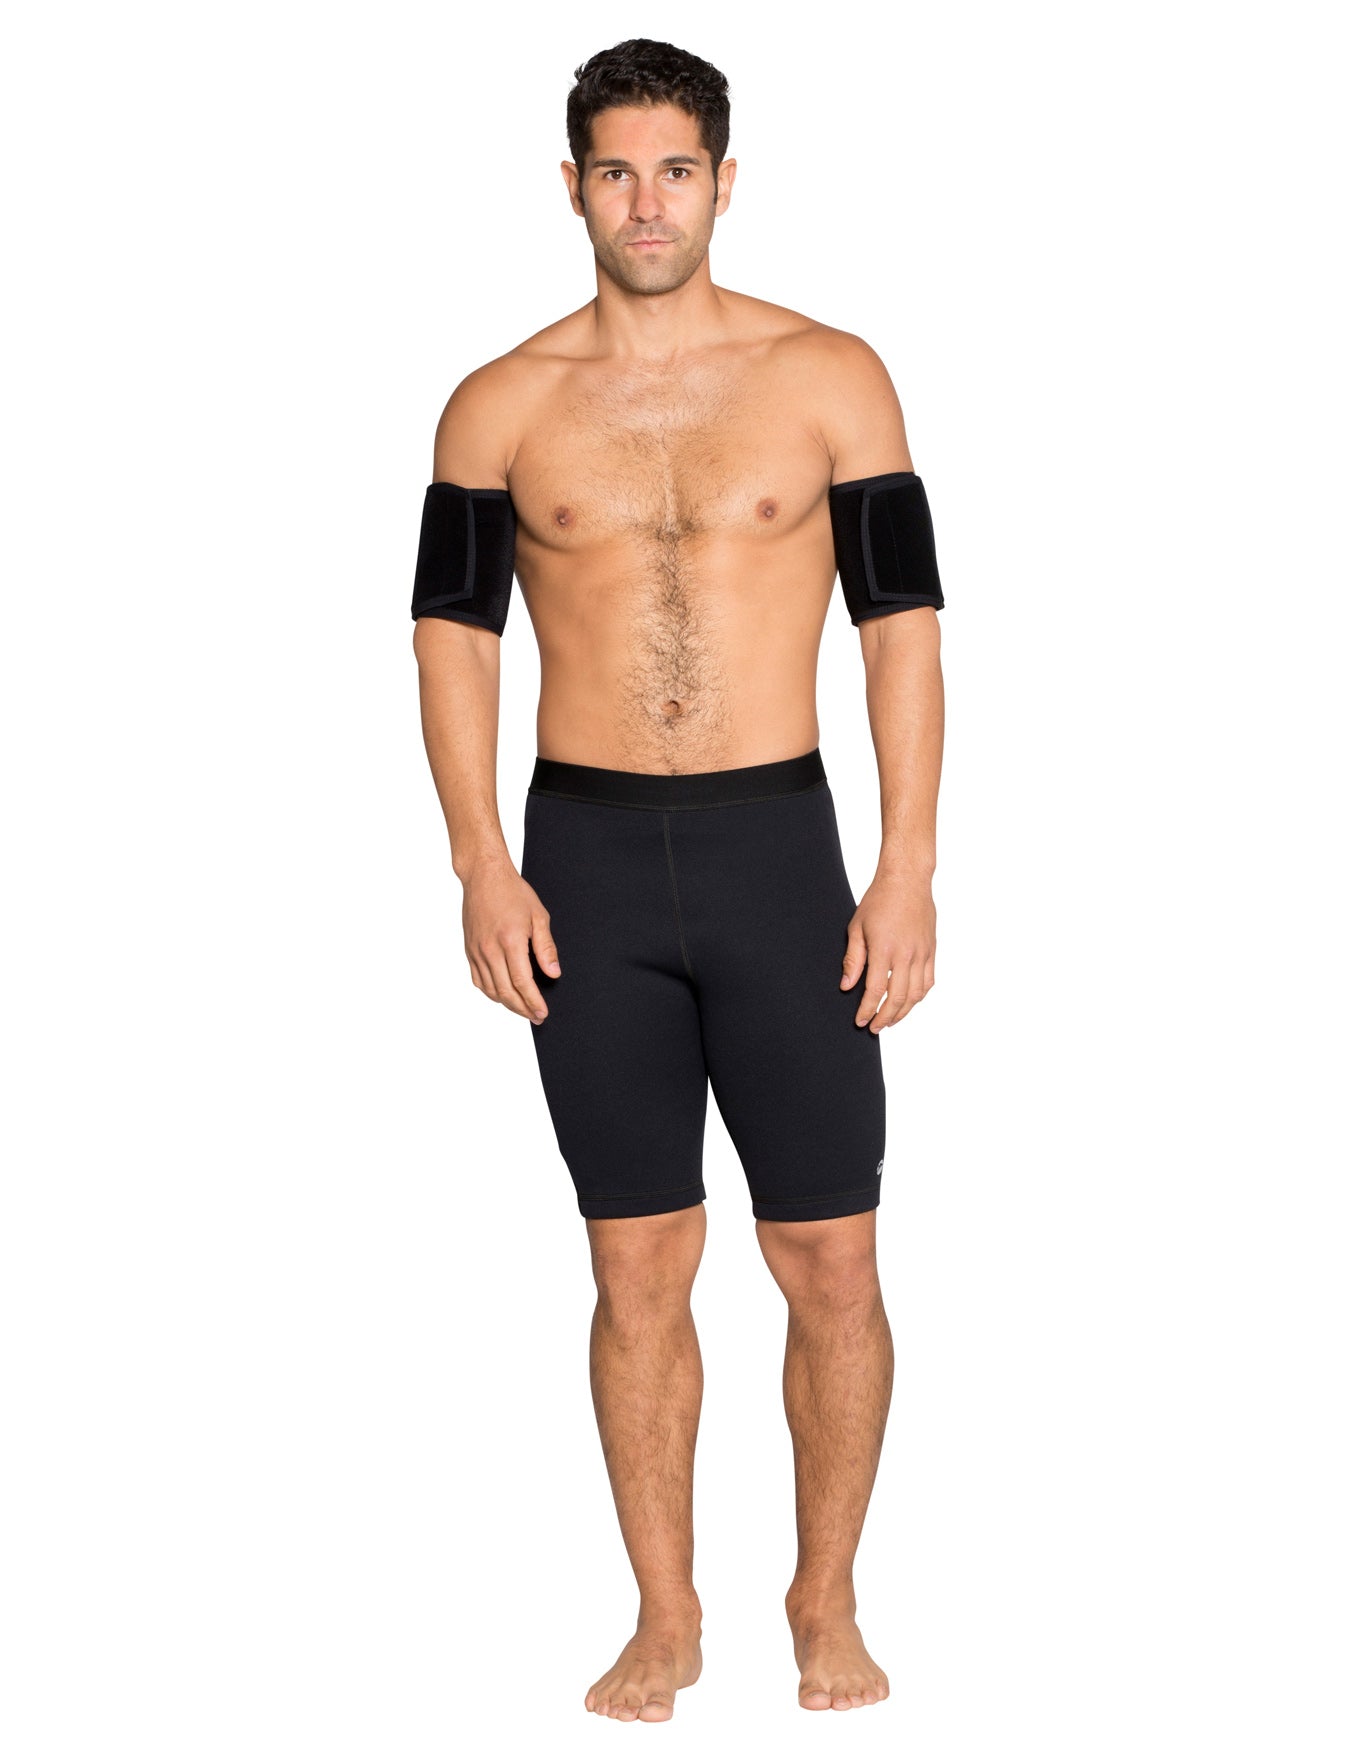 Men's Heat Maximizing Shorts - Black - Delfin Brands